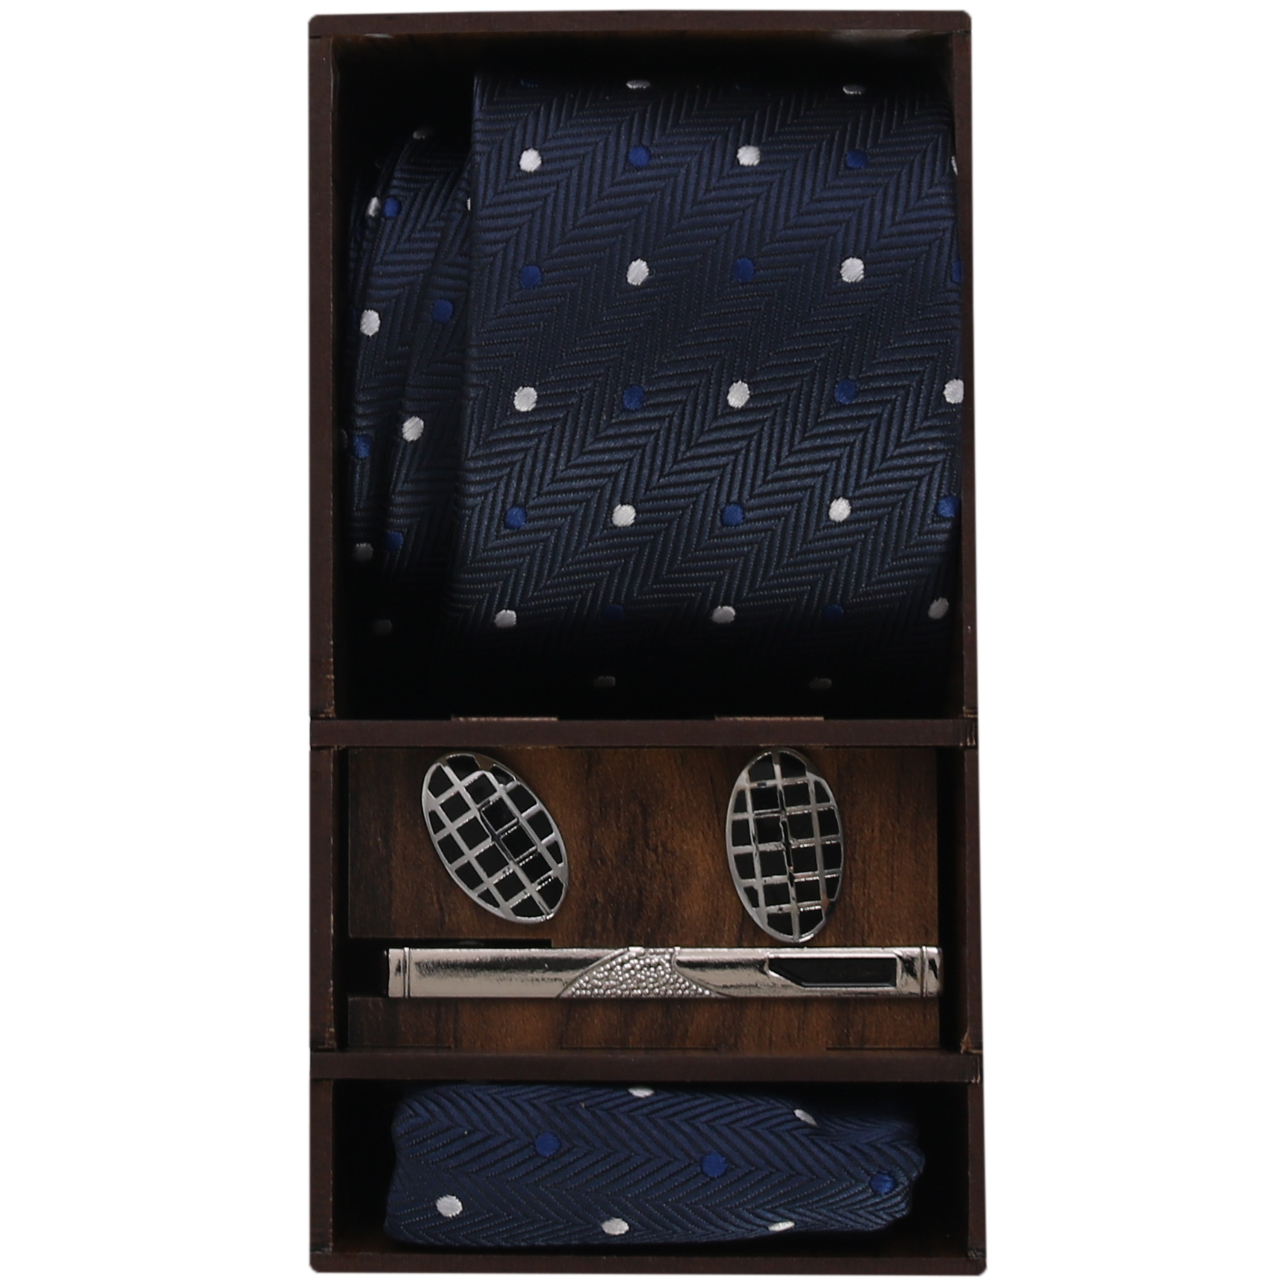  ست کراوات و گیره کراوات و دستمال جیب و دکمه سردست مردانه مدل PJ-103486